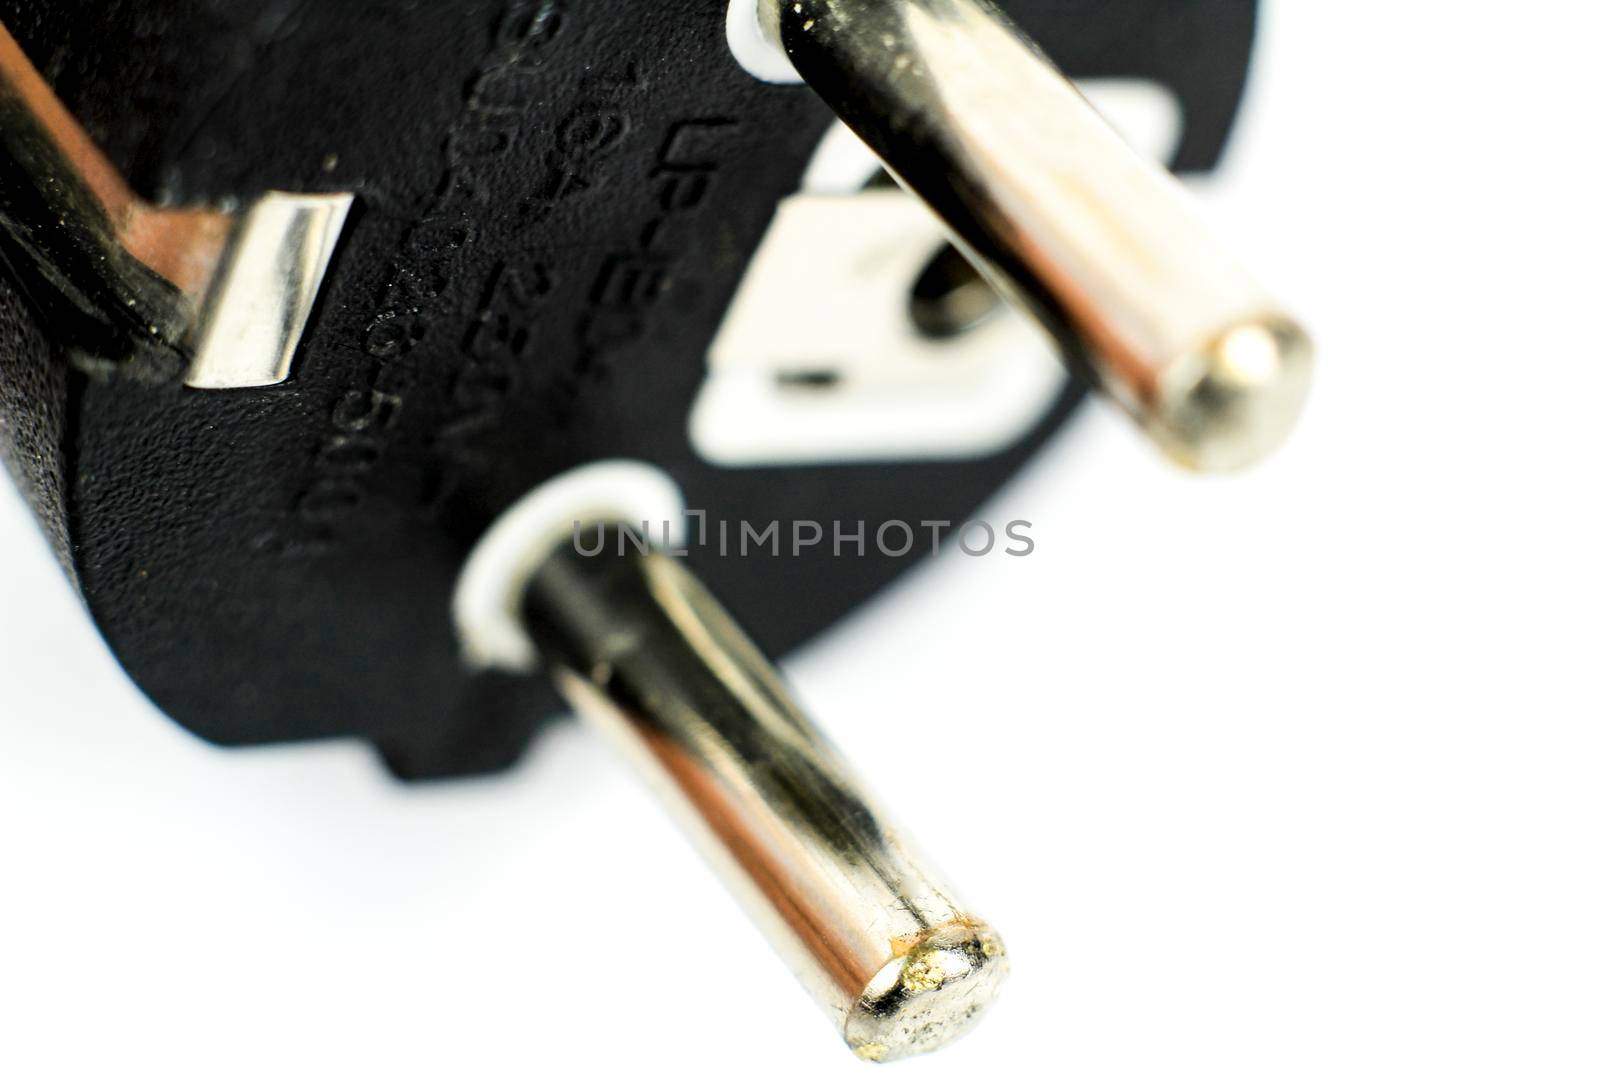 16a 250v black plastic male plug by soniabonet